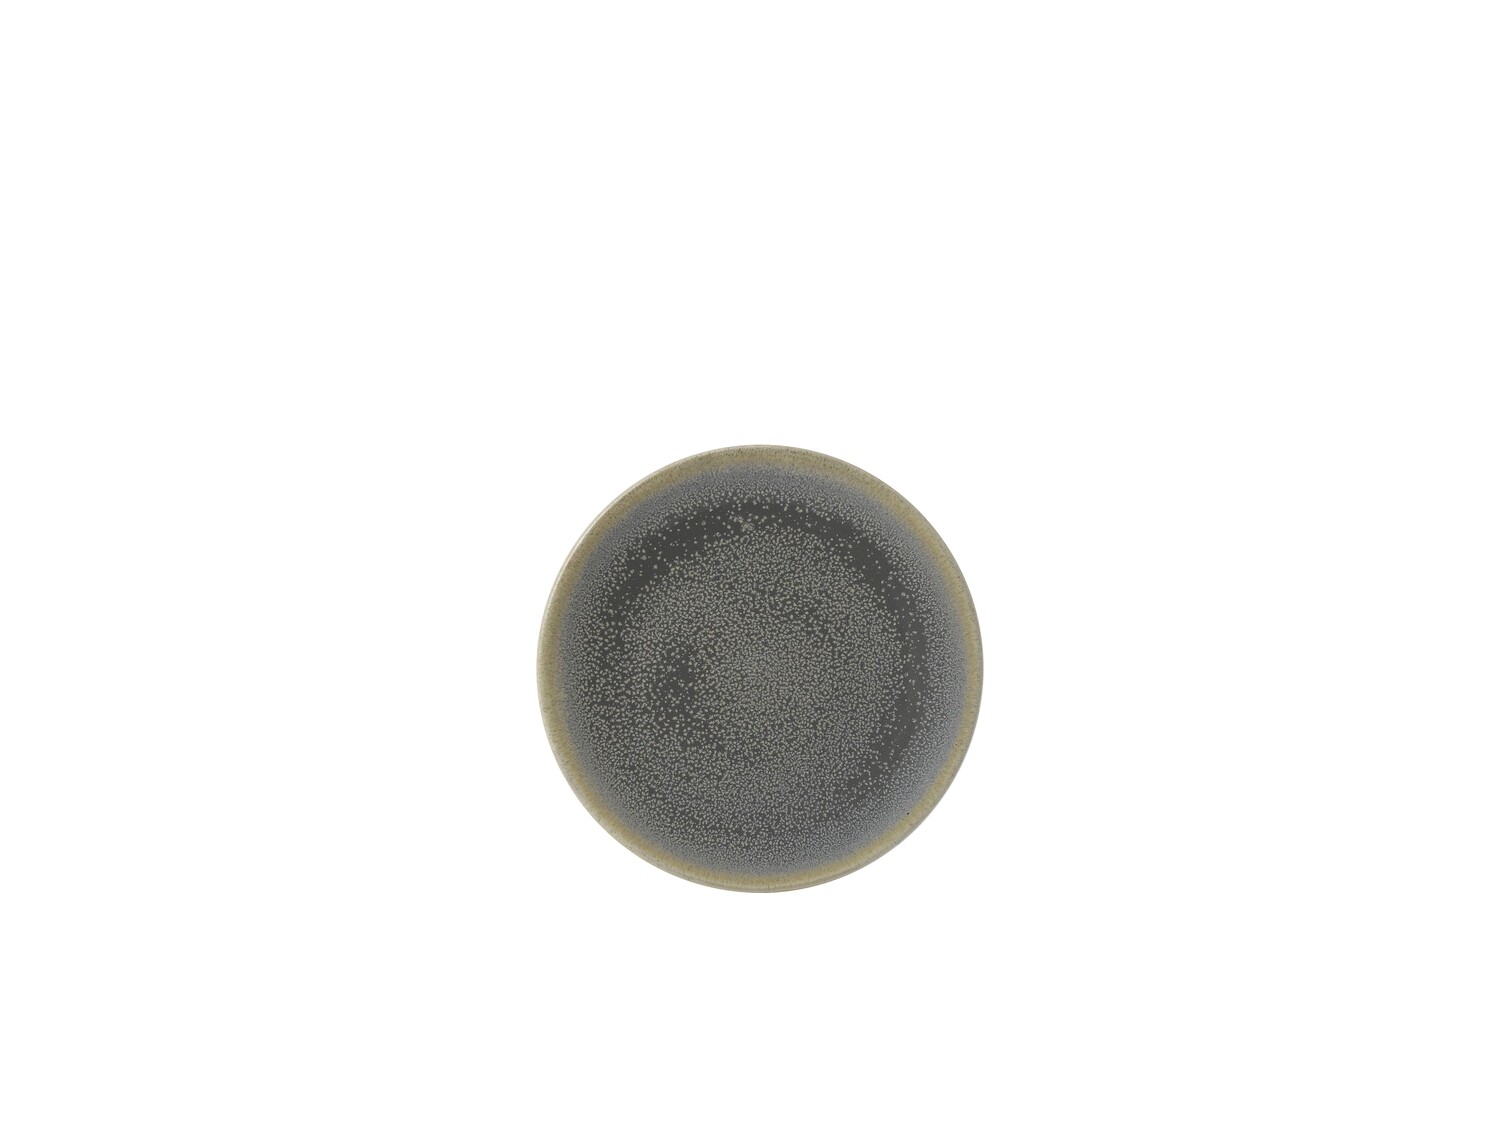 Teller coupé 16.2 cm - Evo Granite Dudson